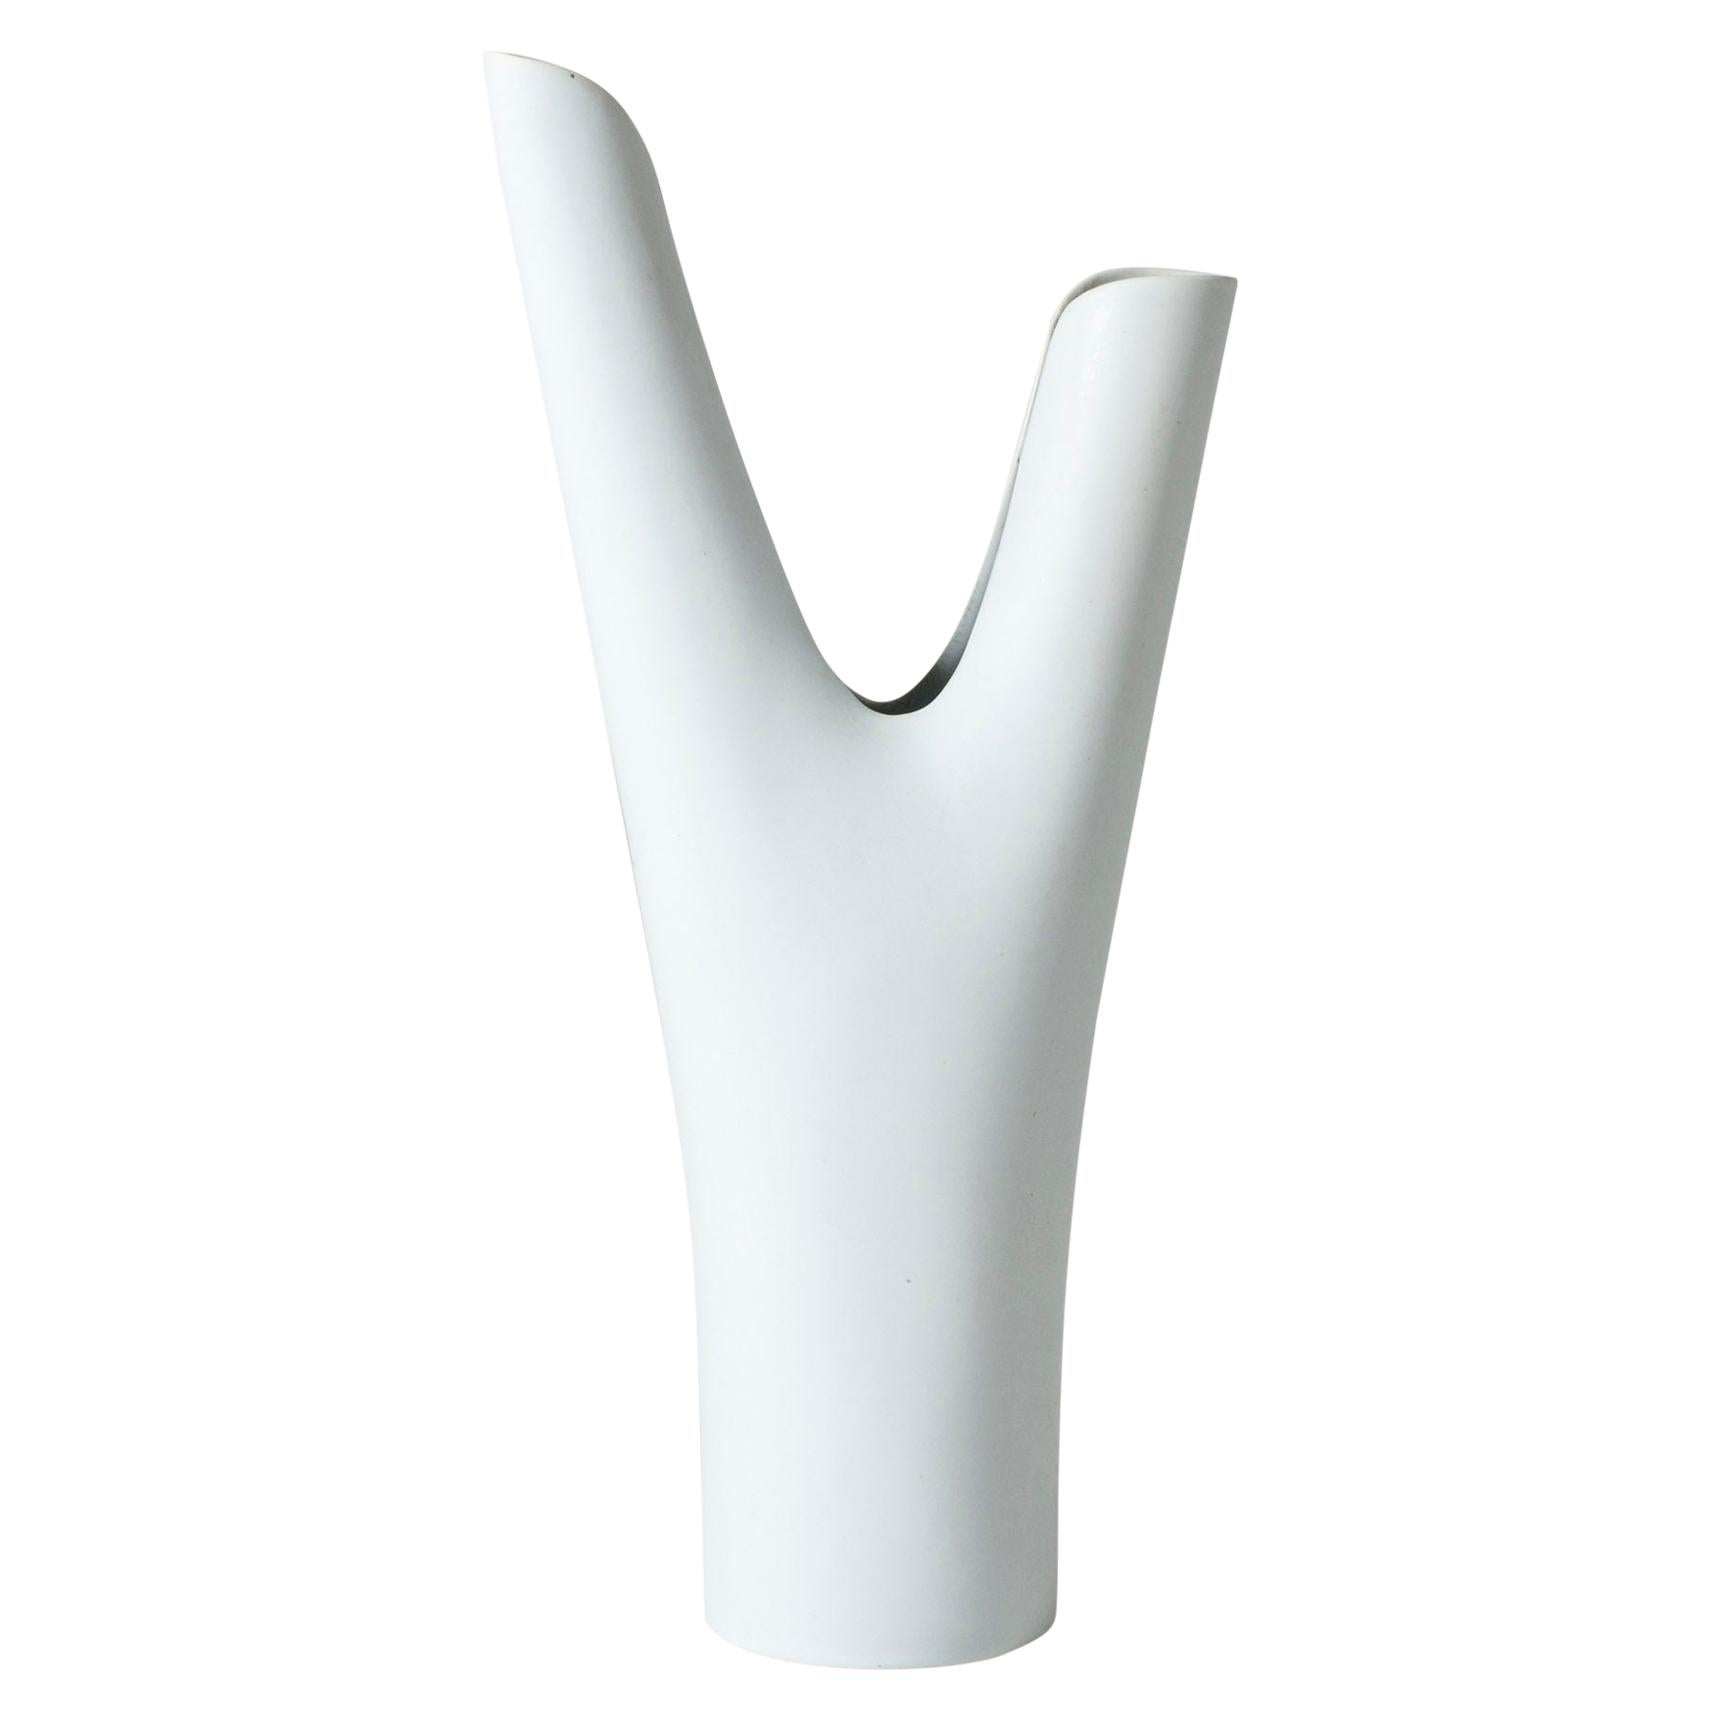 Stoneware "Veckla" Vase by Stig Lindberg